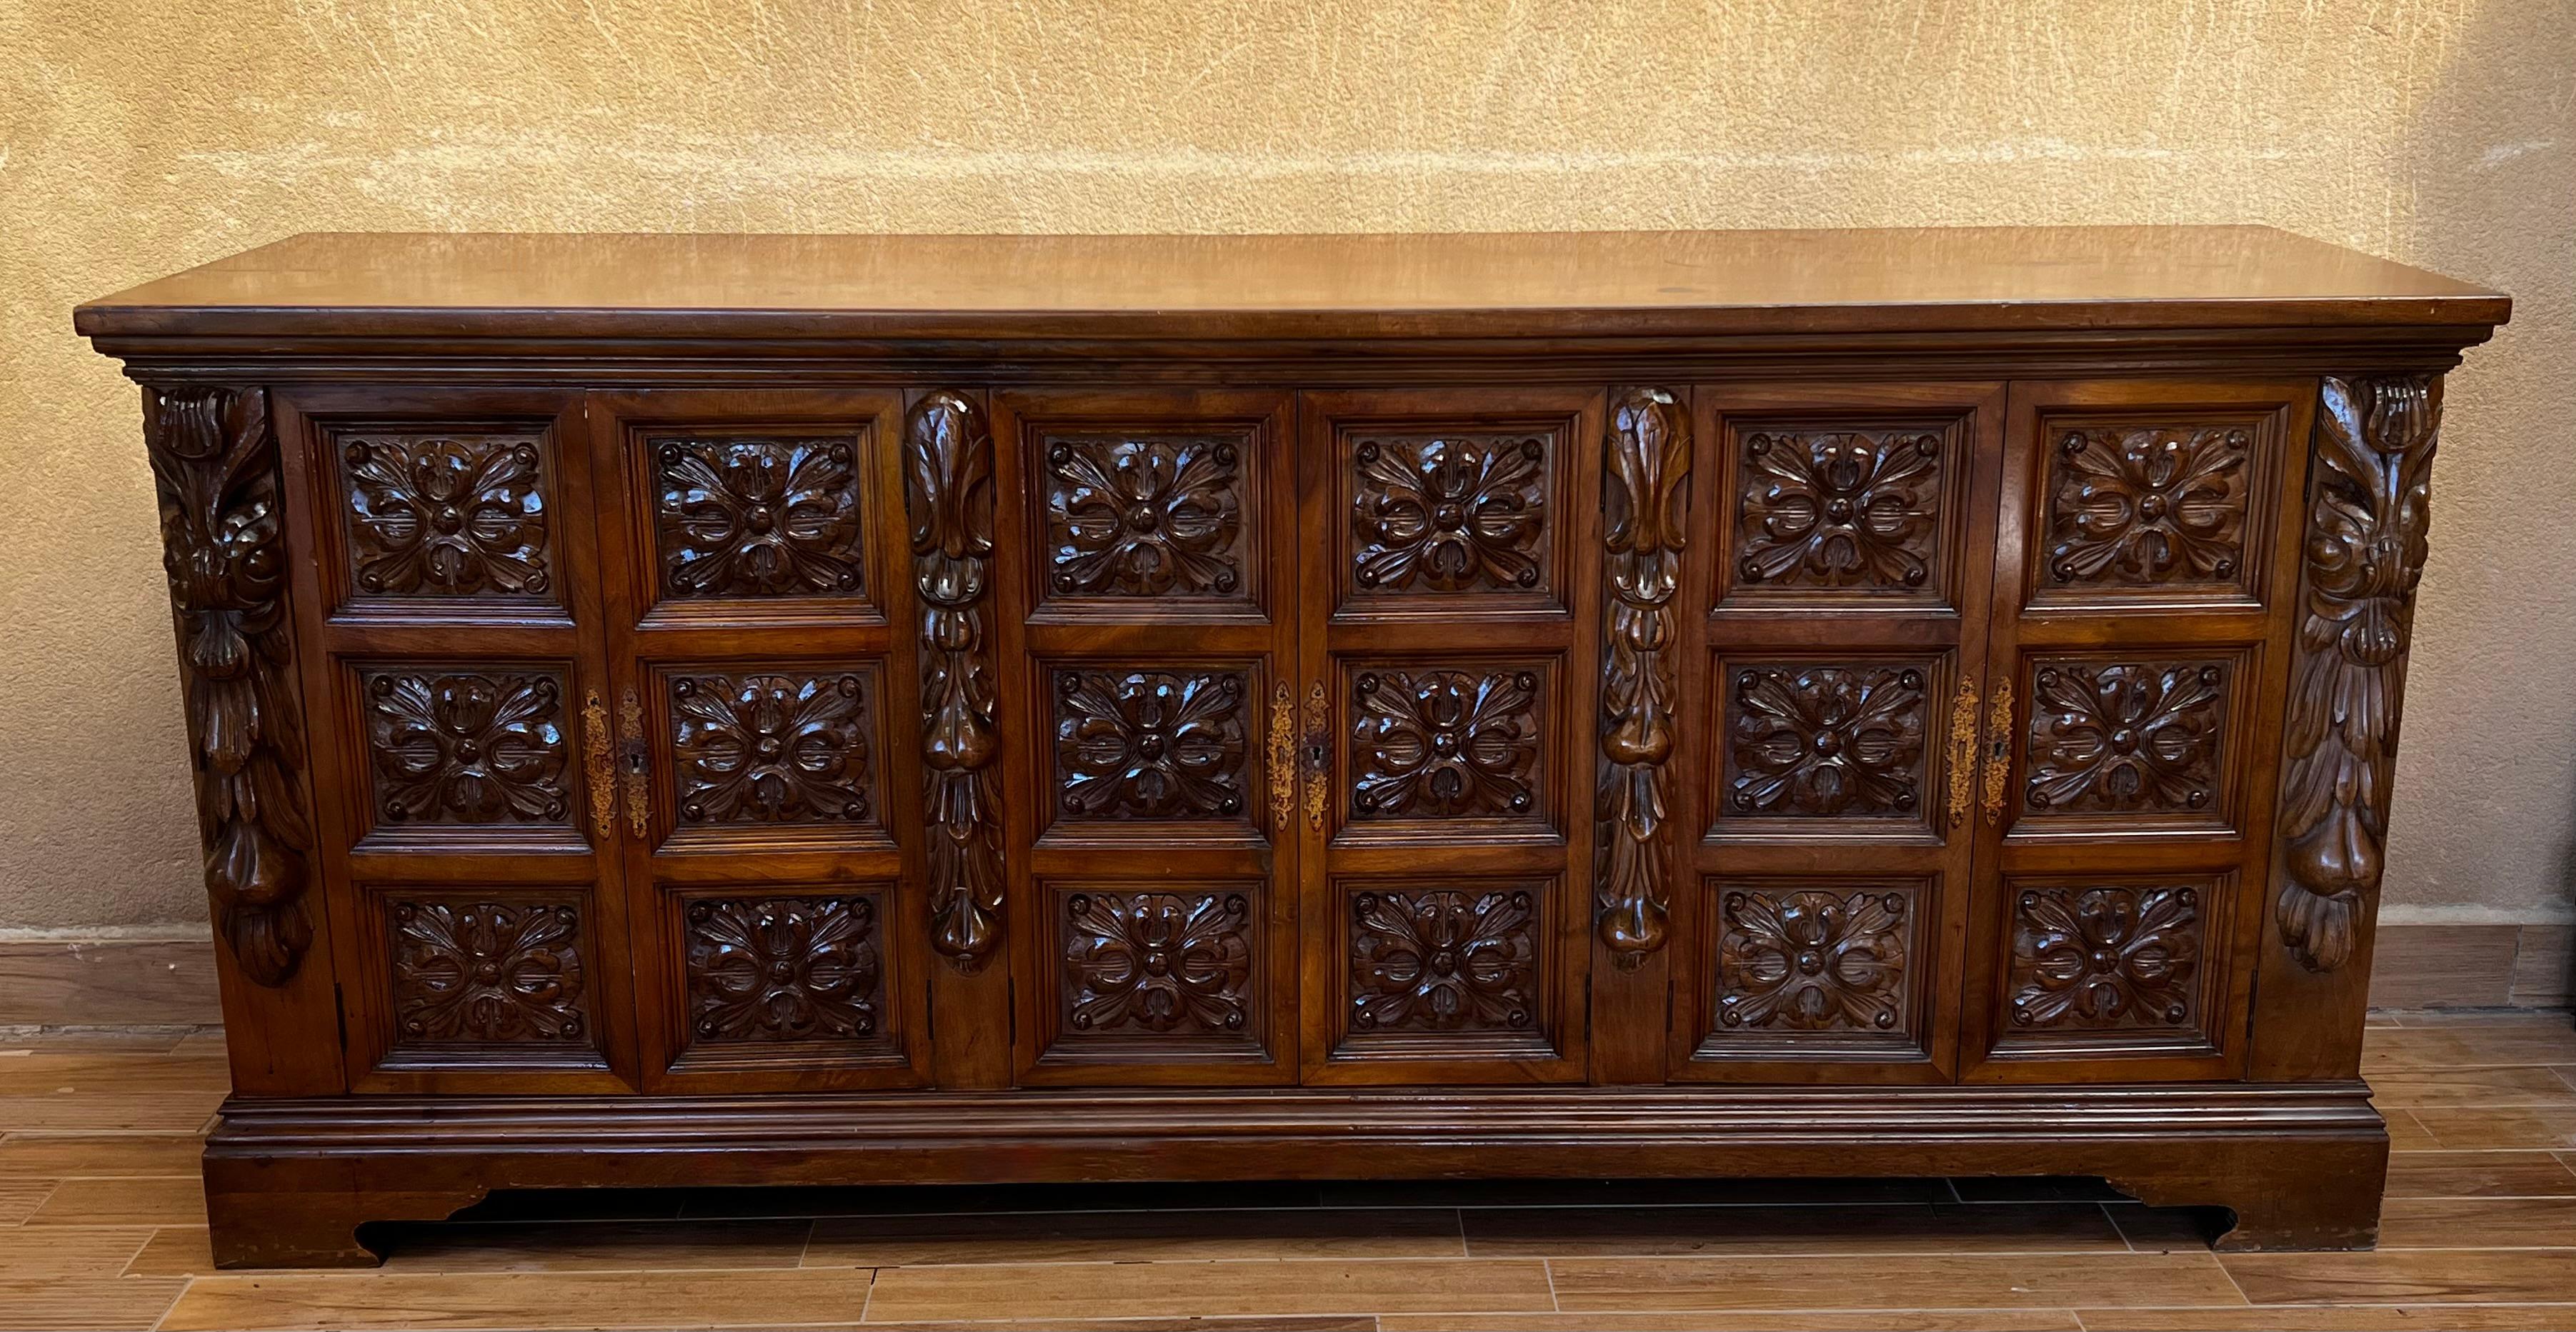 Diese stark geschnitzte Kredenz wurde um 1870 in Spanien hergestellt. Das Buffet ist aus massivem Nussbaumholz gefertigt und steht auf einem elegant verzierten Sockel. Der Schrank verfügt über sechs Türen auf der Vorderseite, die sich zu